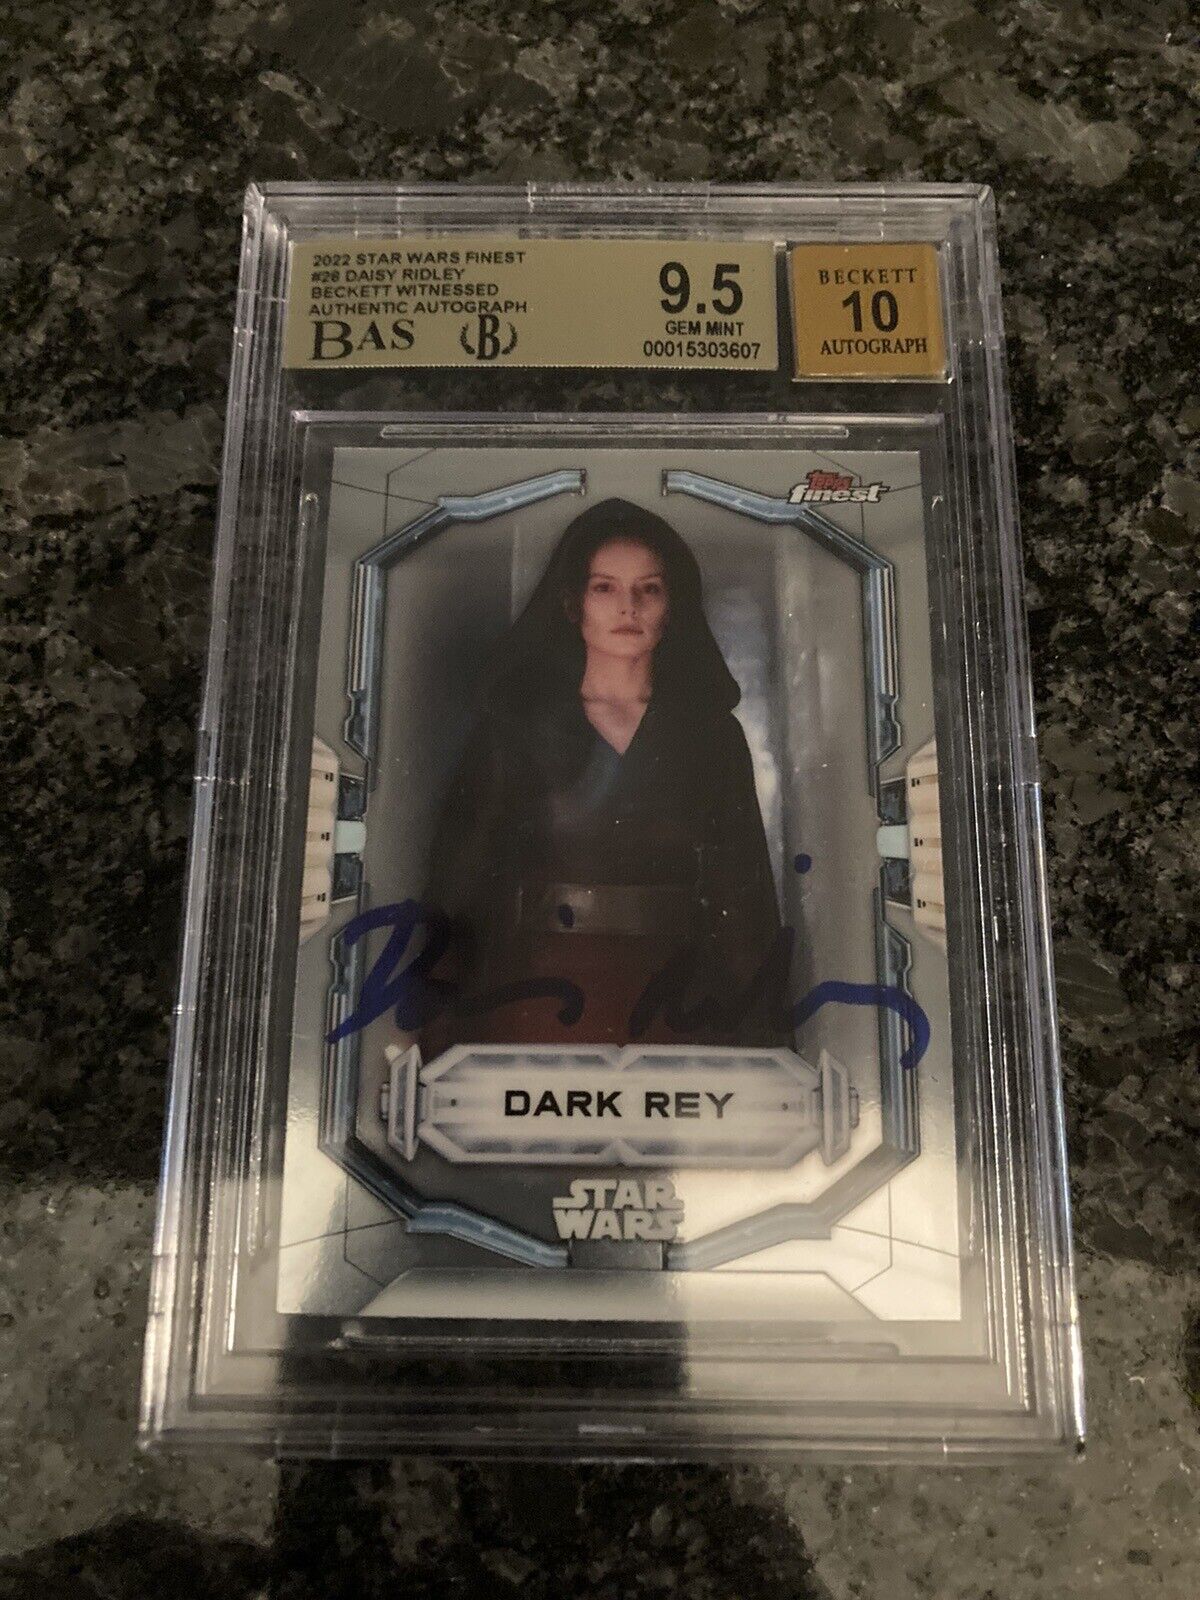 2022 Star Wars Finest #28 Dark Rey Daisy Ridley Autograph Beckett Witnessed 10